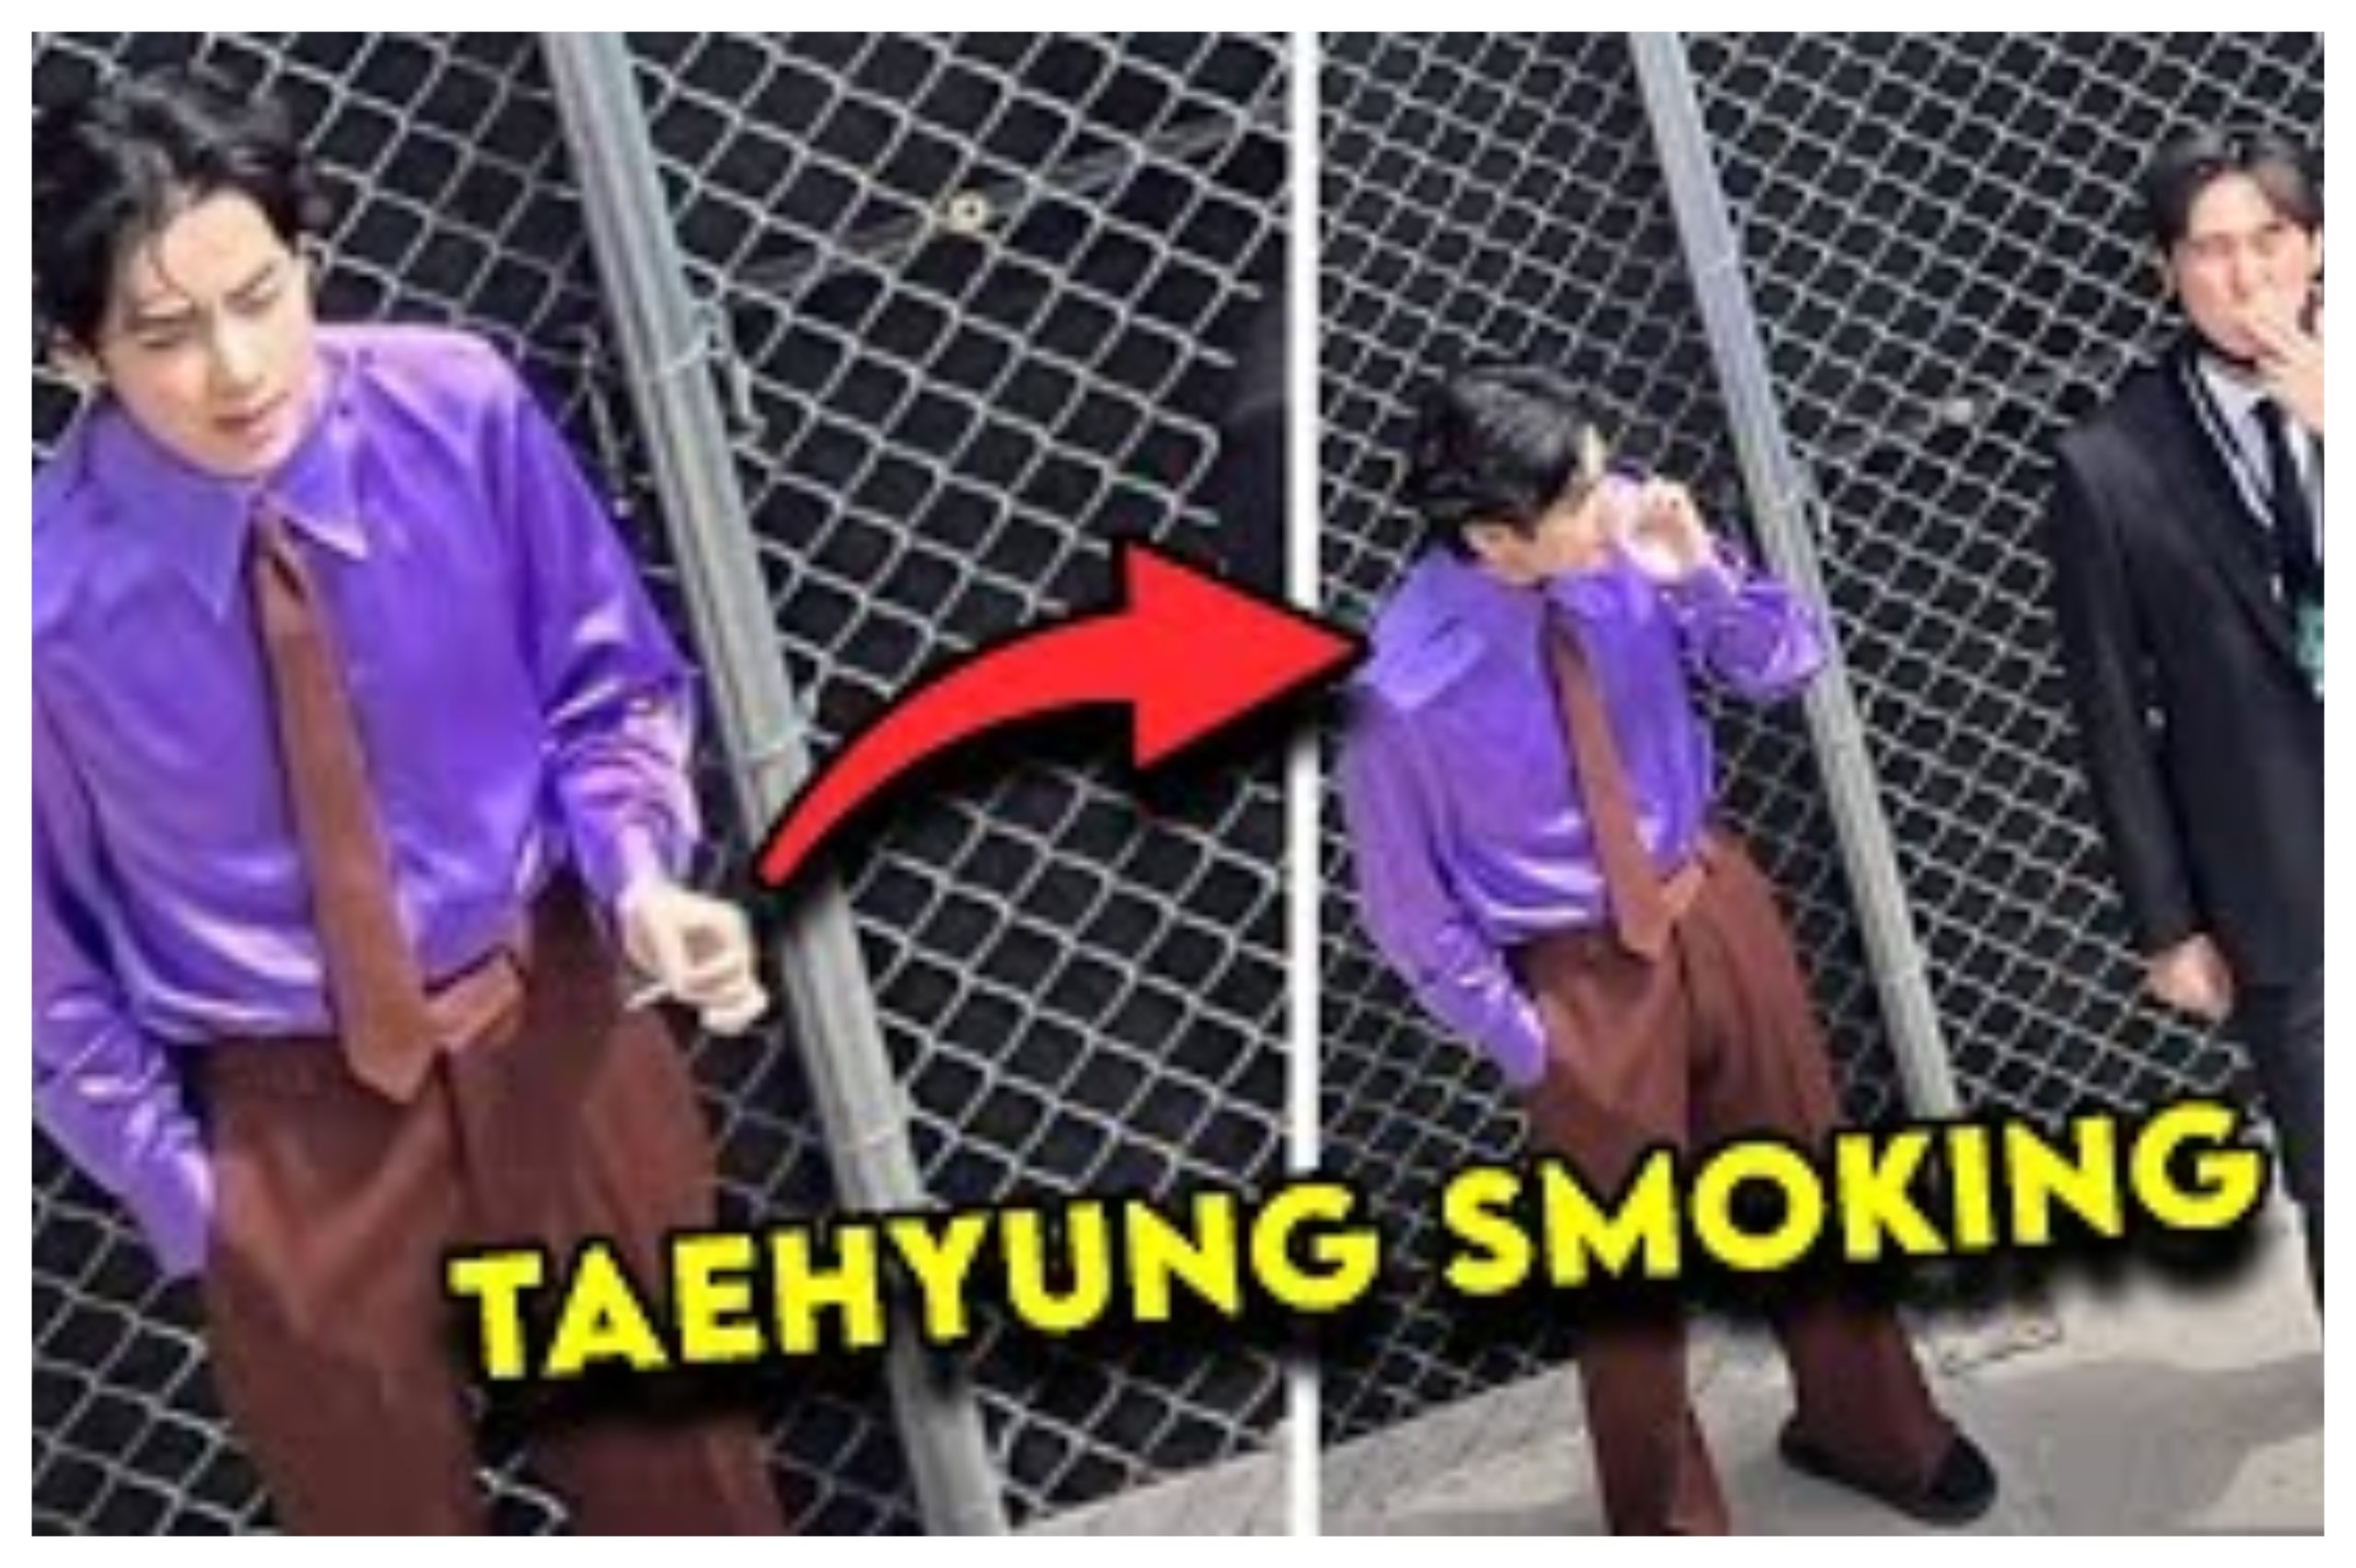 Taehyung Smoking Leaked Reddit and Twitter